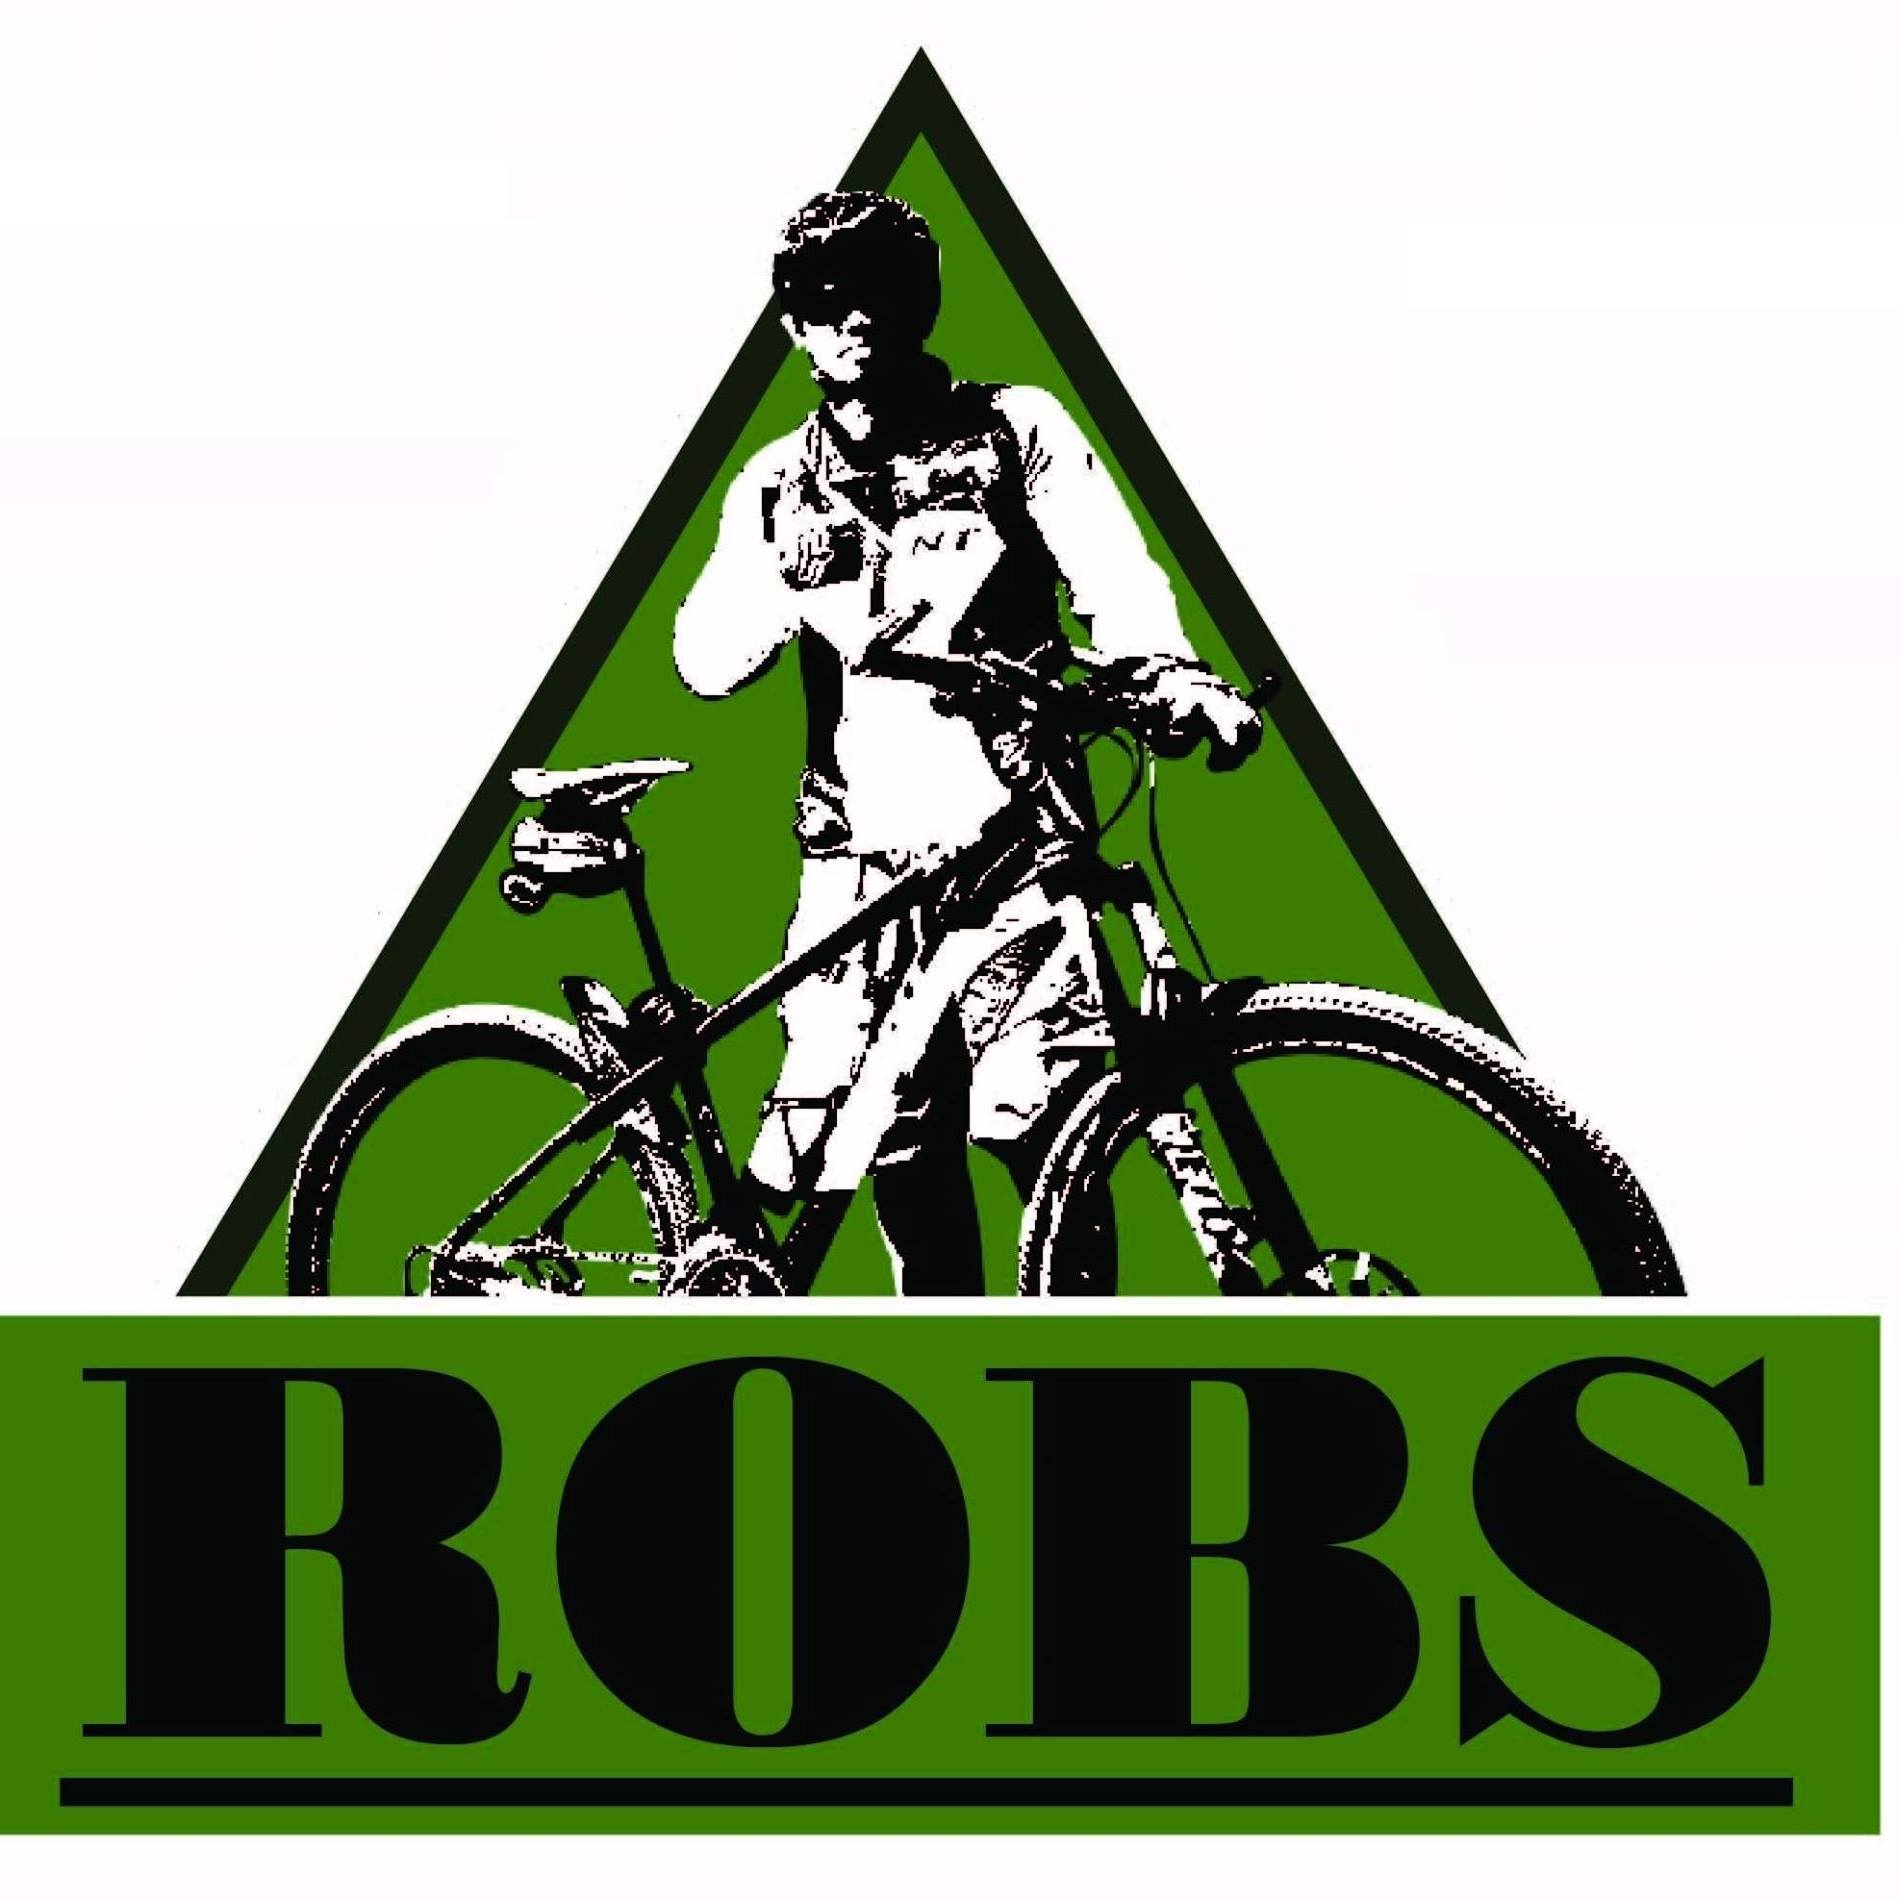 Robs Bikeshop & Accessories